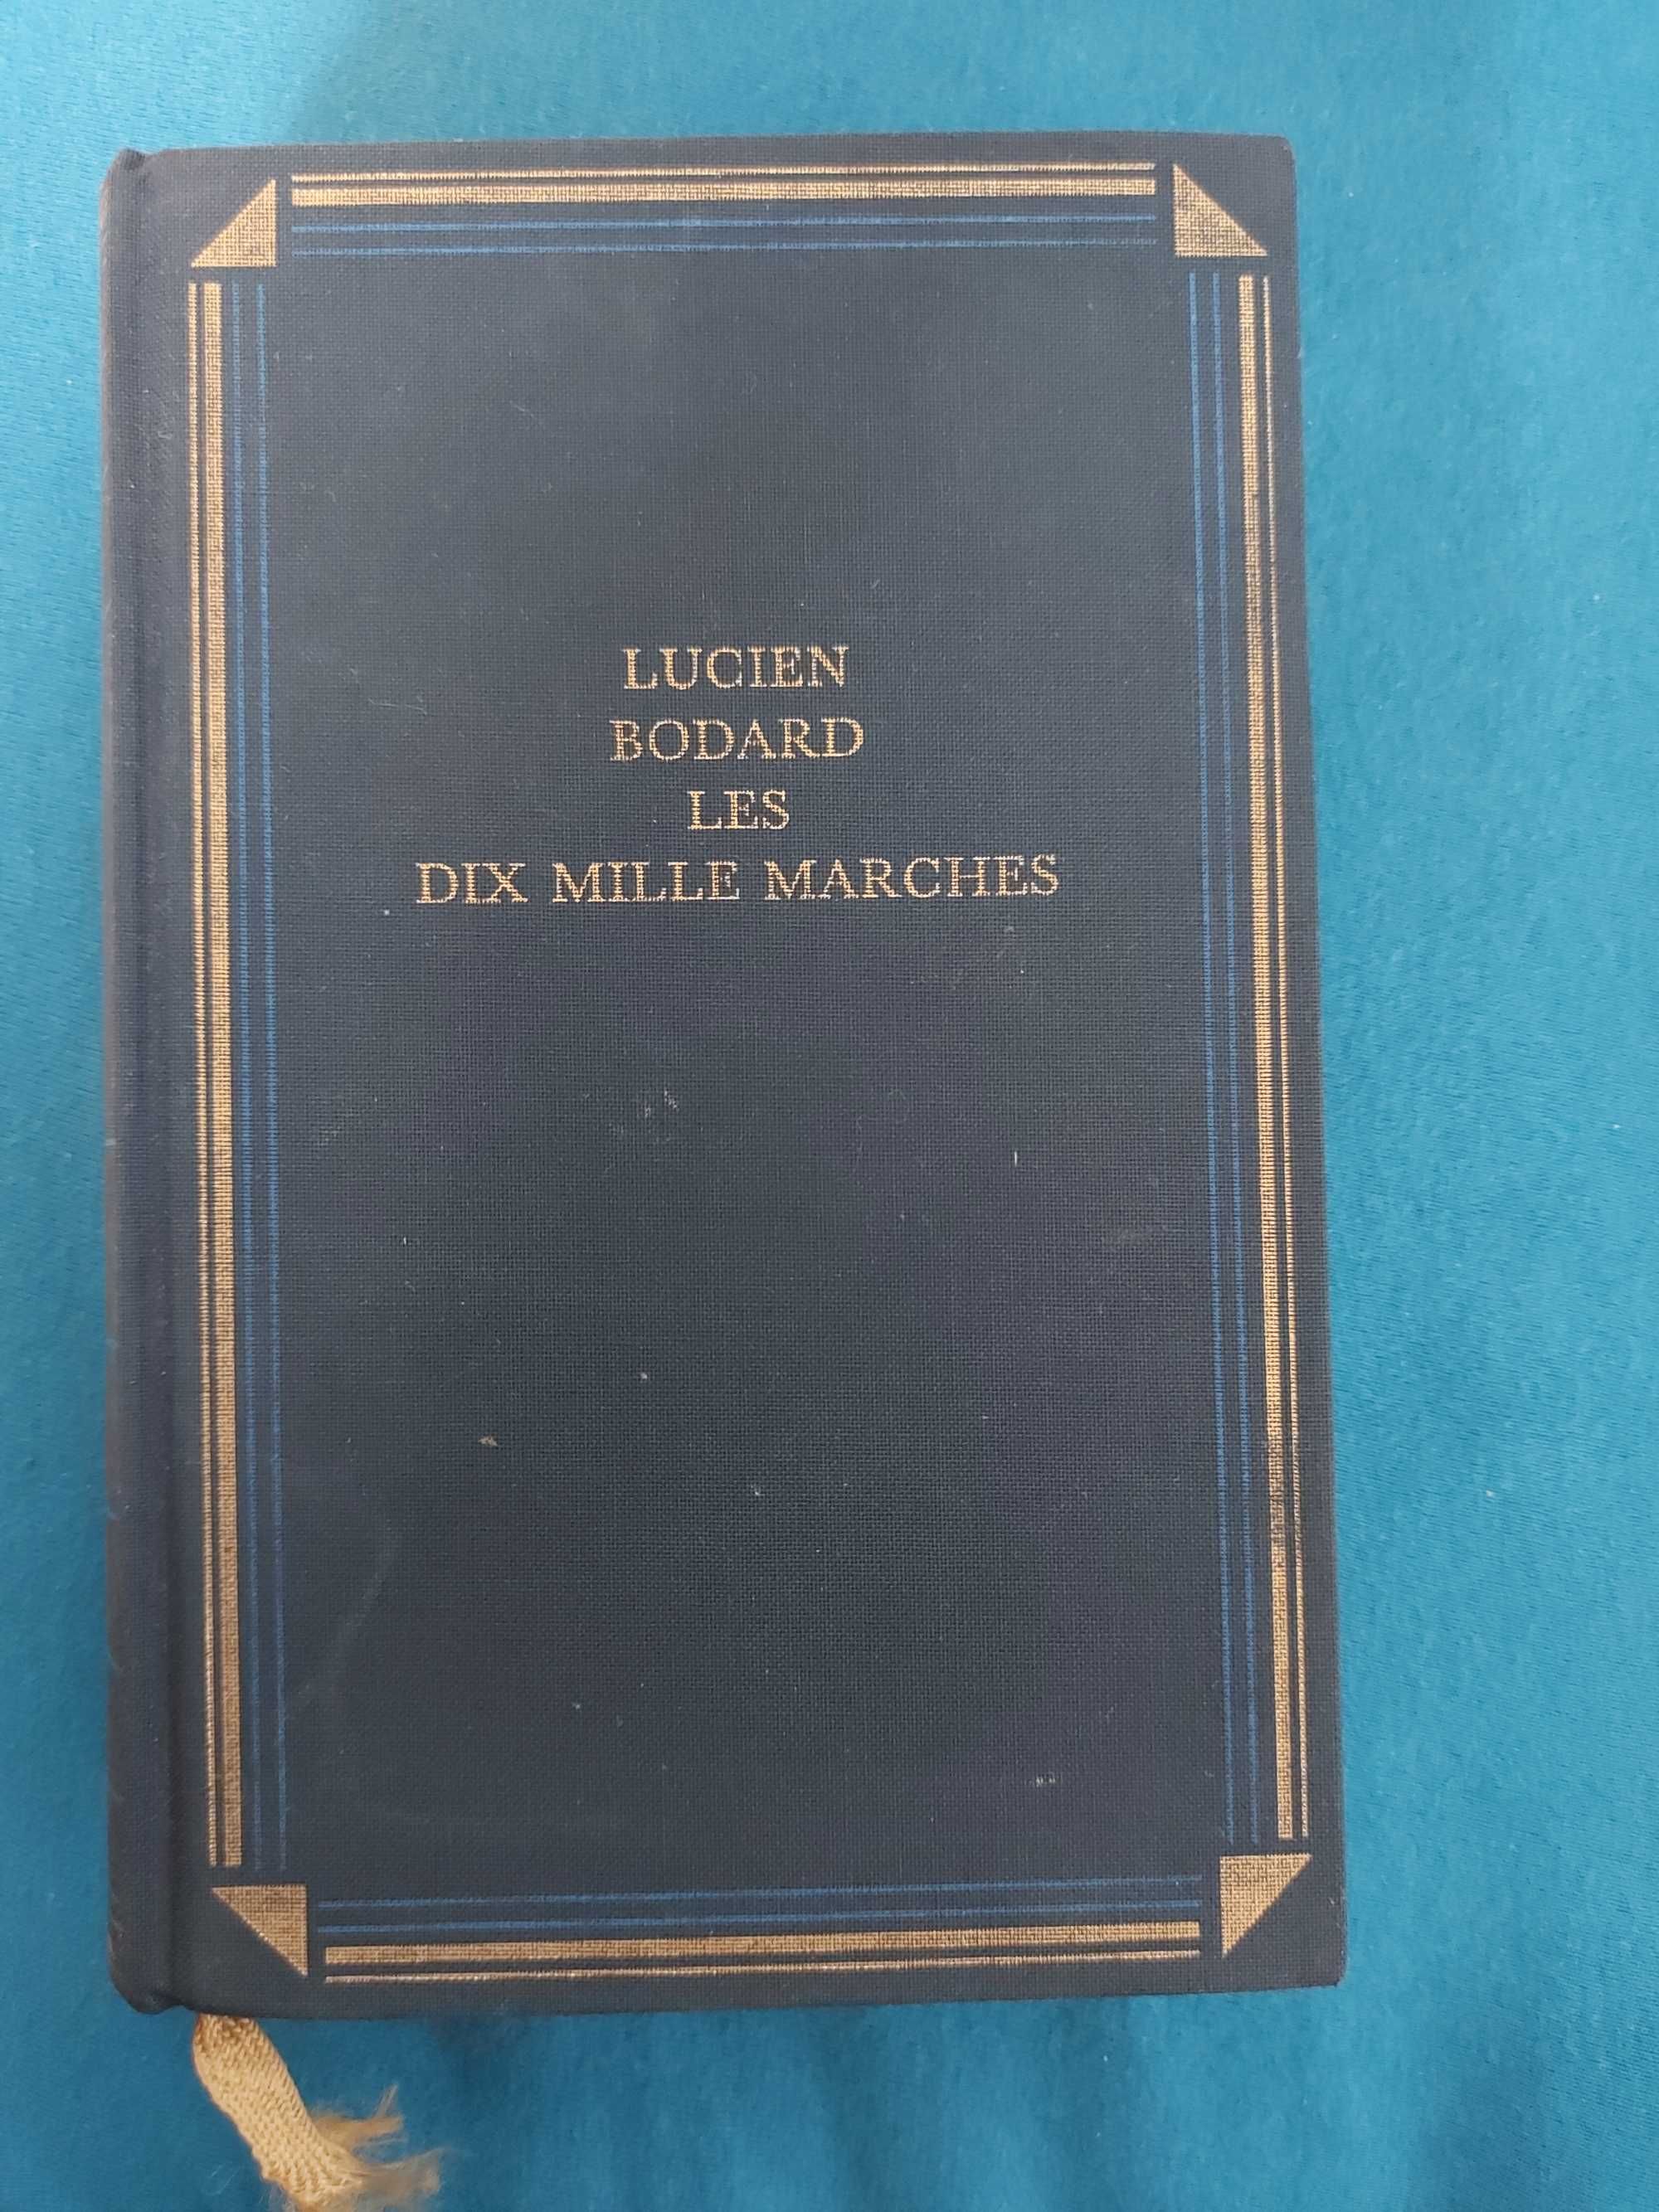 Les dix mille marches - powieść w oryginale